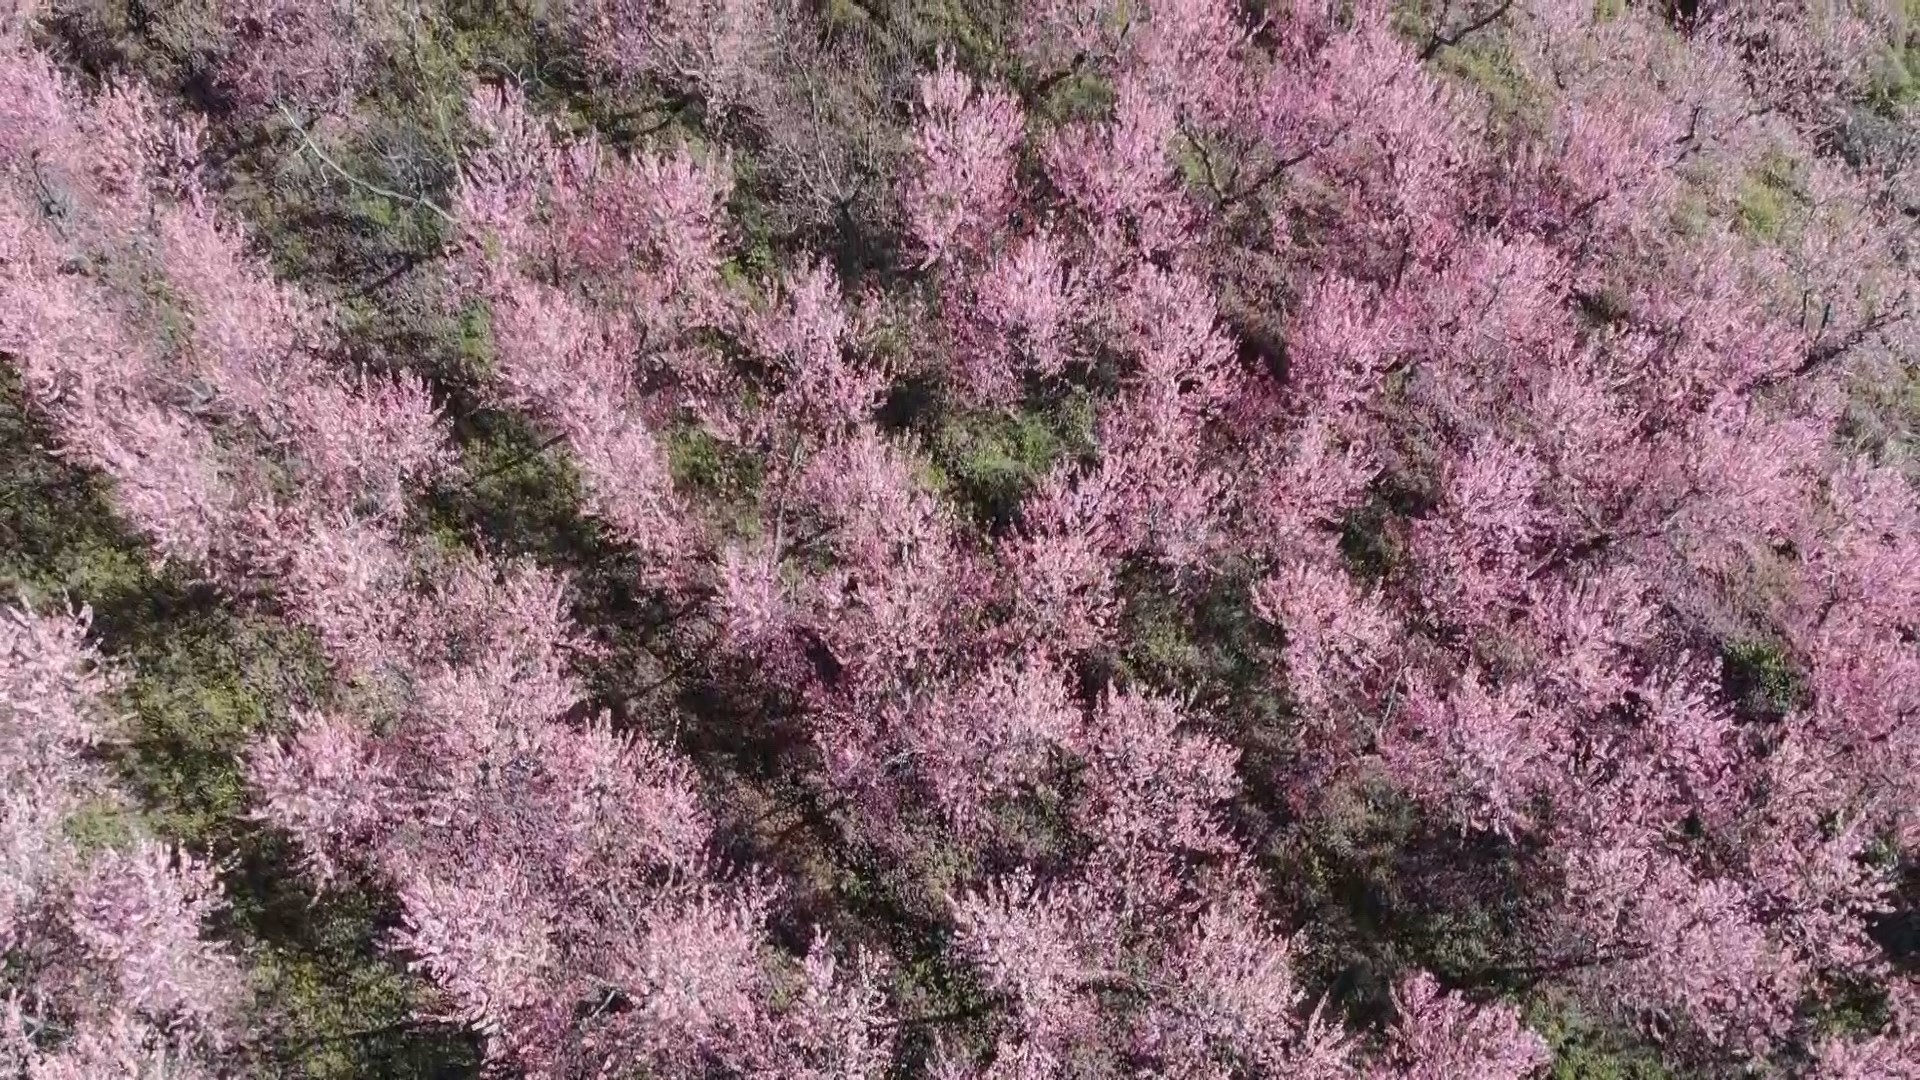 Çiçek açan meyve ağaçları kartpostallık görüntüler oluşturdu. Masalsı görüntüler dron ile görüntülendi 11